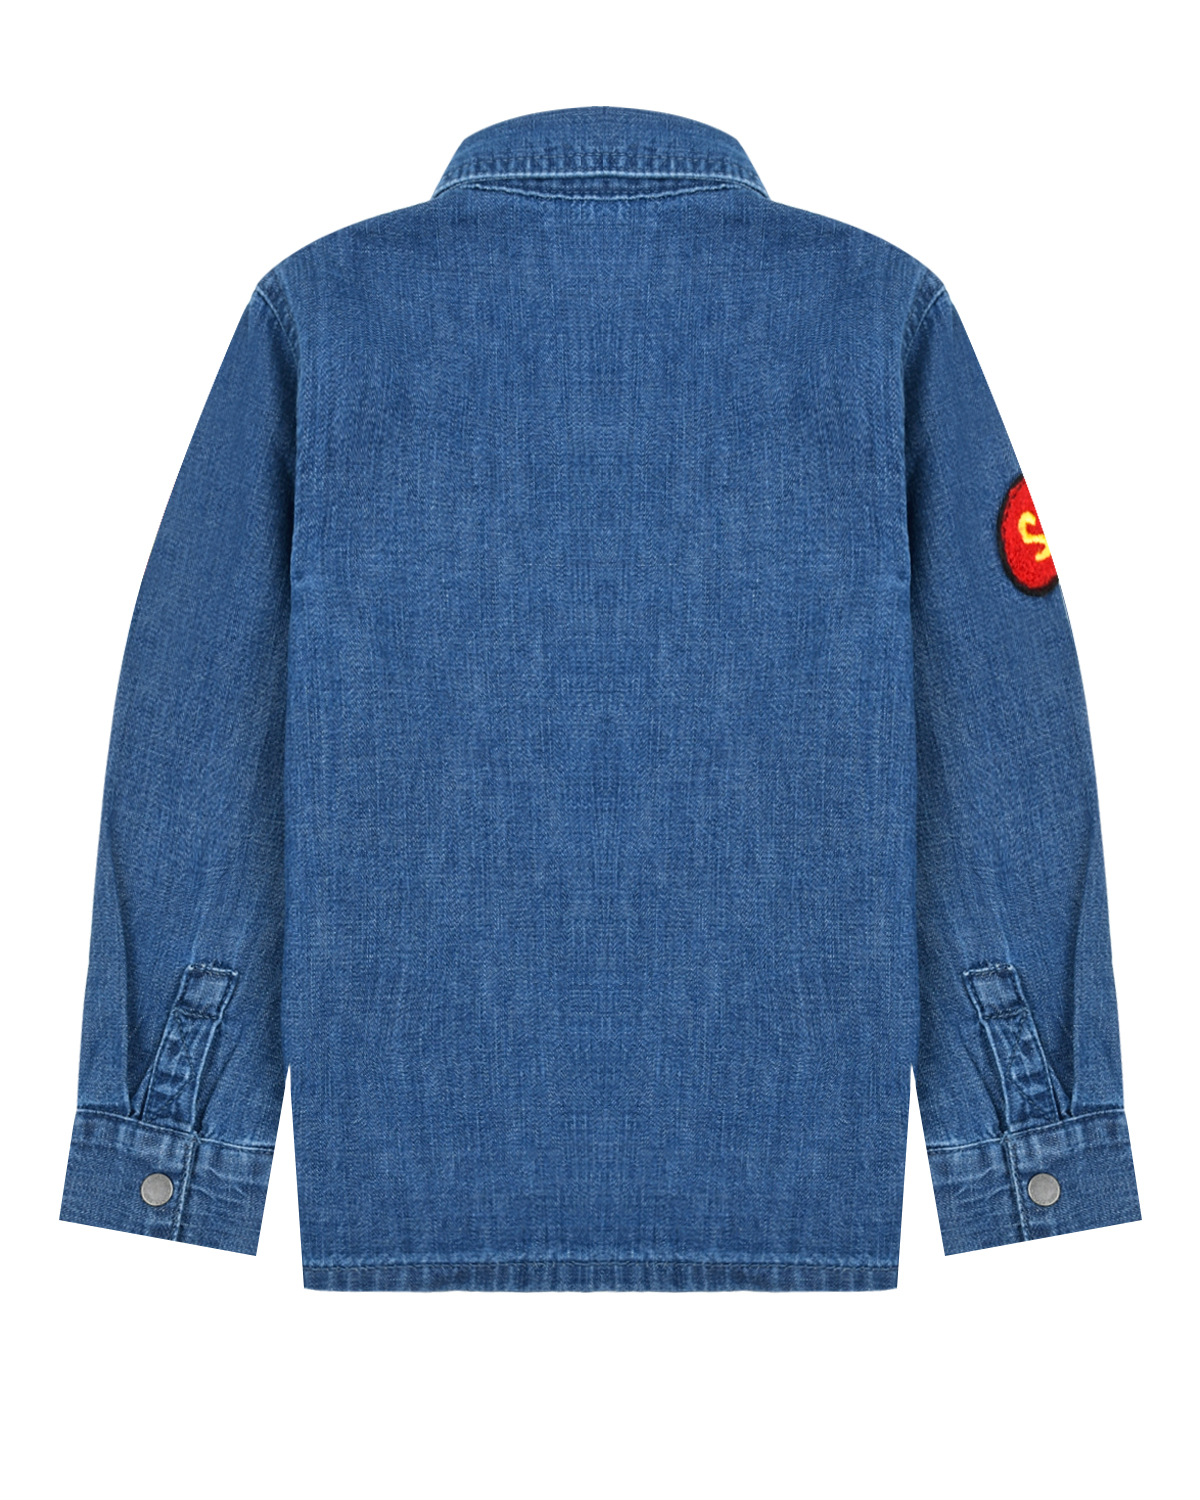 Синяя джинсовая рубашка с аппликациями Stella McCartney детская, размер 80, цвет синий - фото 2